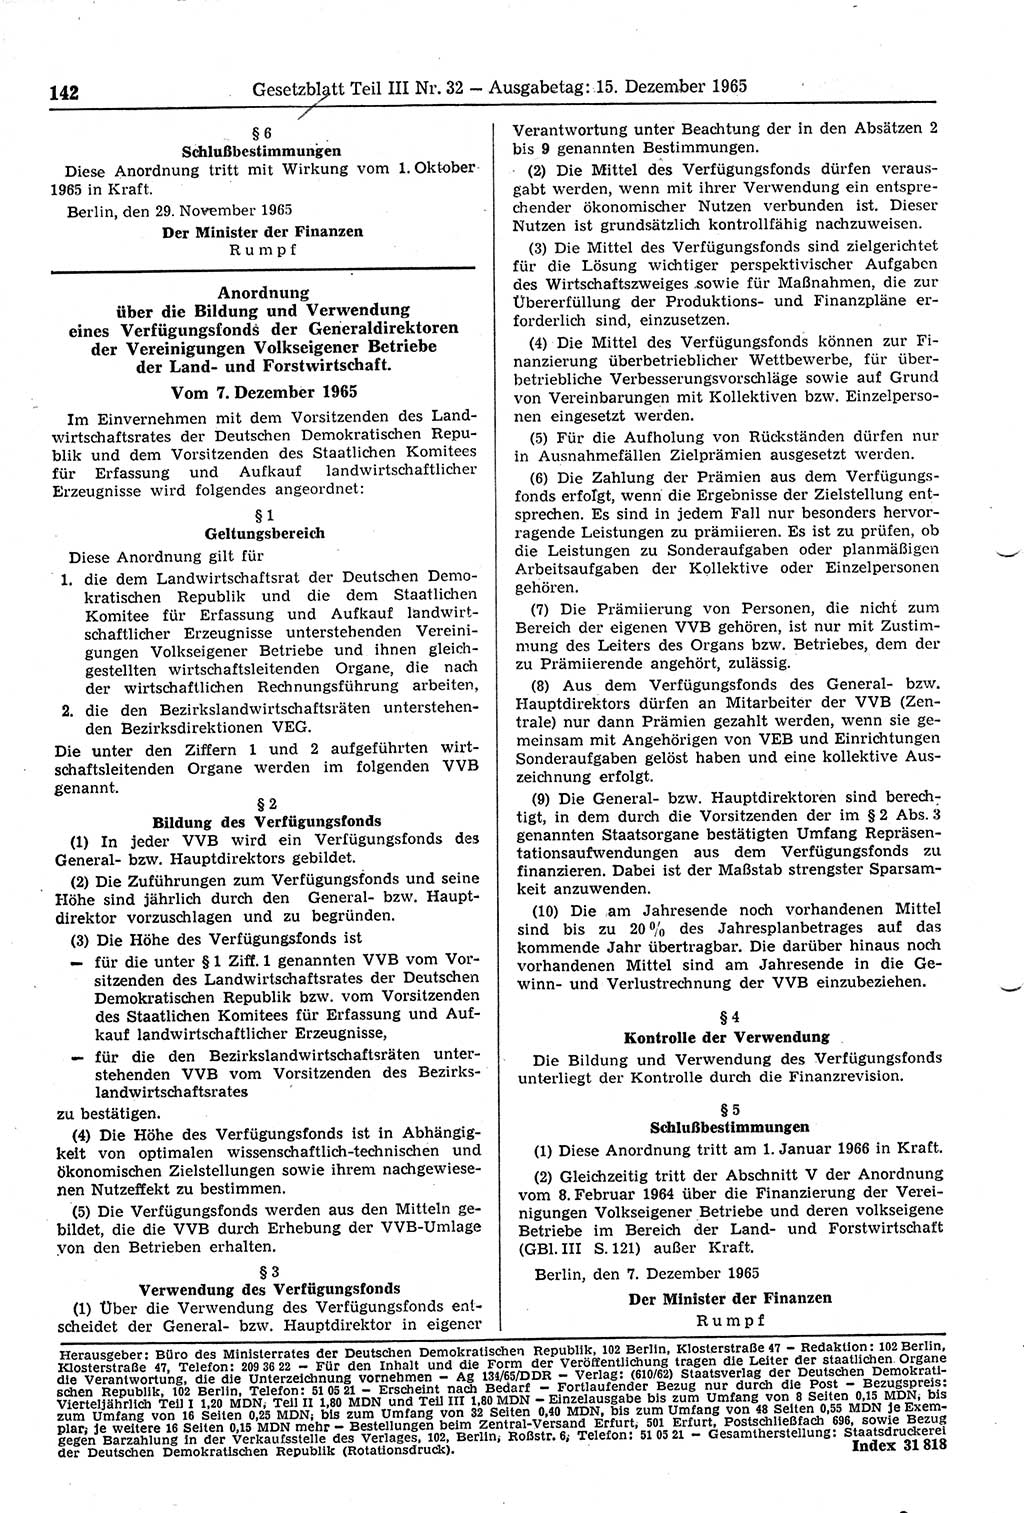 Gesetzblatt (GBl.) der Deutschen Demokratischen Republik (DDR) Teil ⅠⅠⅠ 1965, Seite 142 (GBl. DDR ⅠⅠⅠ 1965, S. 142)